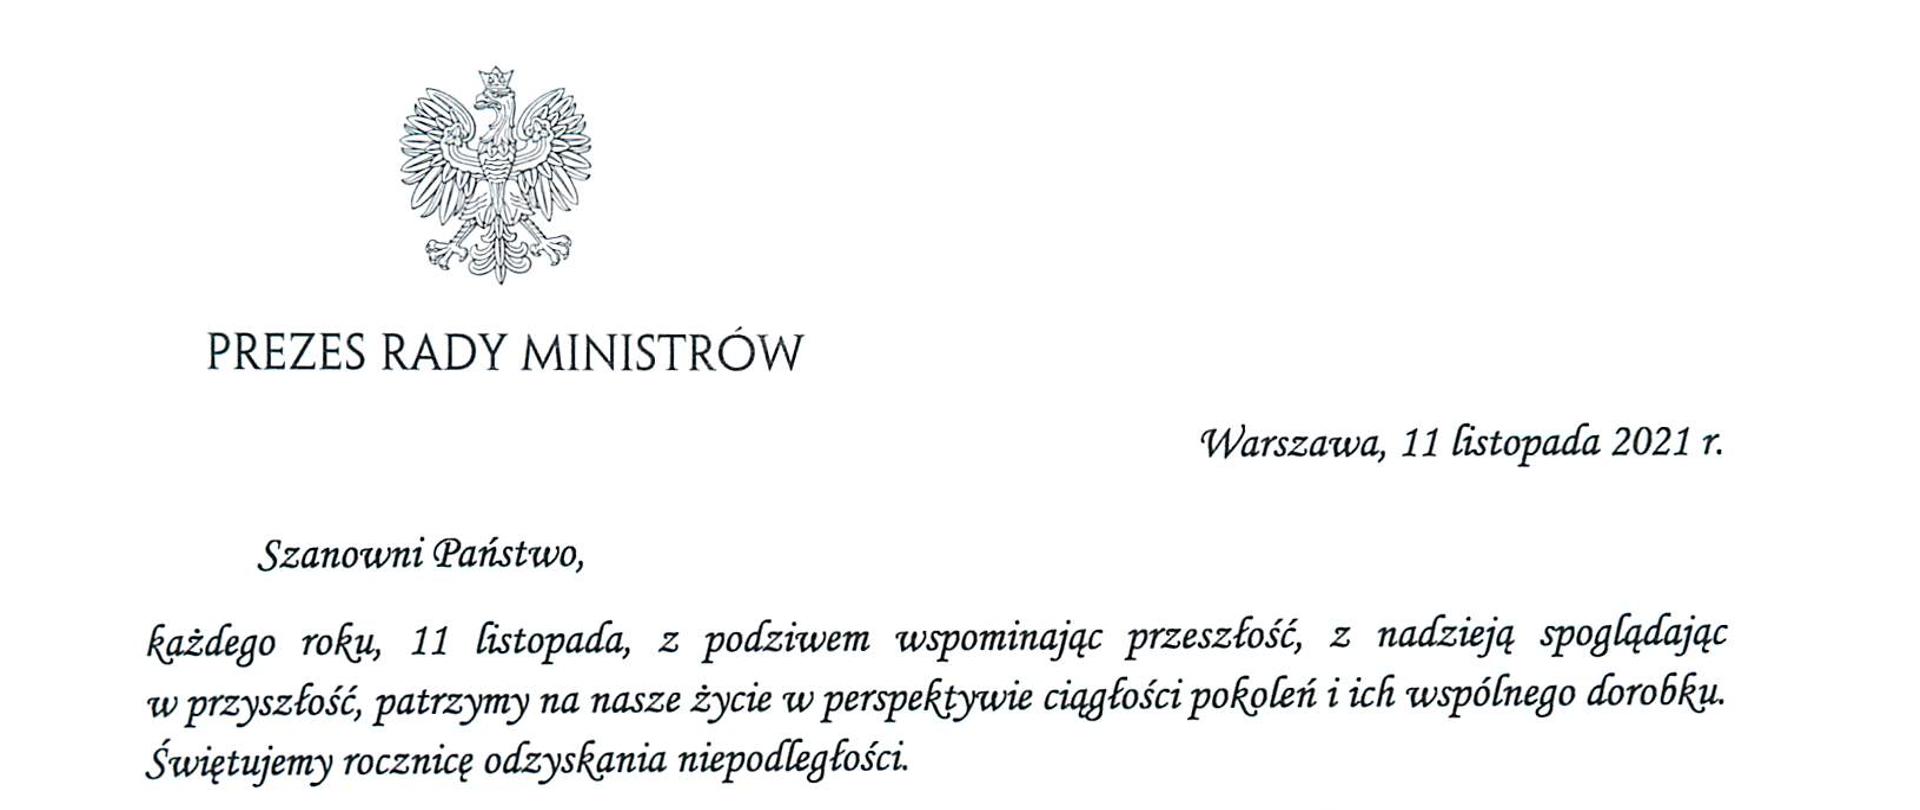 Prezes Rady Ministrów
Warszawa, 11 listopada 2021 r.
Szanowni Państwo,
każdego roku, 11 listopada, z podziwem wspominając przeszłość, z nadzieją spoglądając
w przyszłość, patrzymy na nasze życie w perspektywie ciągłości pokoleń i ich wspólnego dorobku.
Świętujemy rocznicę odzyskania niepodległości.
2 wdzięcznością wracamy myślą do tych, którzy nie bacząc na cenę, zachowali polską tożsamość,
kulturę i język, Wspominamy tych, Którzy wysiłkiem zbrojnym i pracą dyplomatyczną
doprowadzi do odrodzenia Rzeczypospolitej. Z podziwem myślimy o tych, Którzy stając wobec
niewyobrażalnych wydarzeń XX wieku — dwóch wojen światowych, dwóch totalitaryzmów,
podziału świata na dwa obozy oddzielone żelazną Kurtyną — dowiedli swego męstwa
i determinacji Ich nadzieja, gotowość do największych poświęceń woła walki i wiara
w zwycięstwo stanowią fundament naszej dzisiejszej tożsamości.
W dniu Narodowego Święta Niepodległości pamiętamy także o ludziach, którzy współtworzyli
instytucje odradzającego się państwa, w tym aparat administracyjny. To dzięki ich ofiarności,
zaangażowaniu i odpowiedzialności zawód urzędnika cieszył się tak, wielkim poważaniem
w okresie II Rzeczypospolitej. A praca w ustanowionej w 1922 roku państwowej służbie cywilnej
była powodem do dumy.
Służba cywilna, w Której Państwo dzisiaj pracują, pod wieloma względami różni się od tamtej
sprzed stu lat. Dziś mamy swobodny dostęp do nowoczesnych technologii, edukacji i możliwości
szkoleniowych. Jednak, podobnie jak sto lat temu, w codziennej, urzędniczej pracy wciąż
najistotniejszy pozostaje etos służby Polsce i jej obywatelom.
Szanowni Państwo, w dniu naszego radosnego święta — Narodowego Święta
Niepodległości — oraz zwyczajowo przypadającym wtedy Dniu Służby Cywilnej życzę nam
wszystkim, byśmy tak, dziś, jak i zawsze potrafi cenić dziedzictwo, Które otrzymaliśmy, cieszyć
się nim i je rozwijać. Życzę nam, byśmy głęboko zakorzenieni w naszej tradycji, śmiało odpowiadali
na wyzwania współczesności i mądrze korzystali z możliwości, które przed nami otwiera.
Z wyrazami szacunku i pozdrowieniami
Mateusz Morawiecki